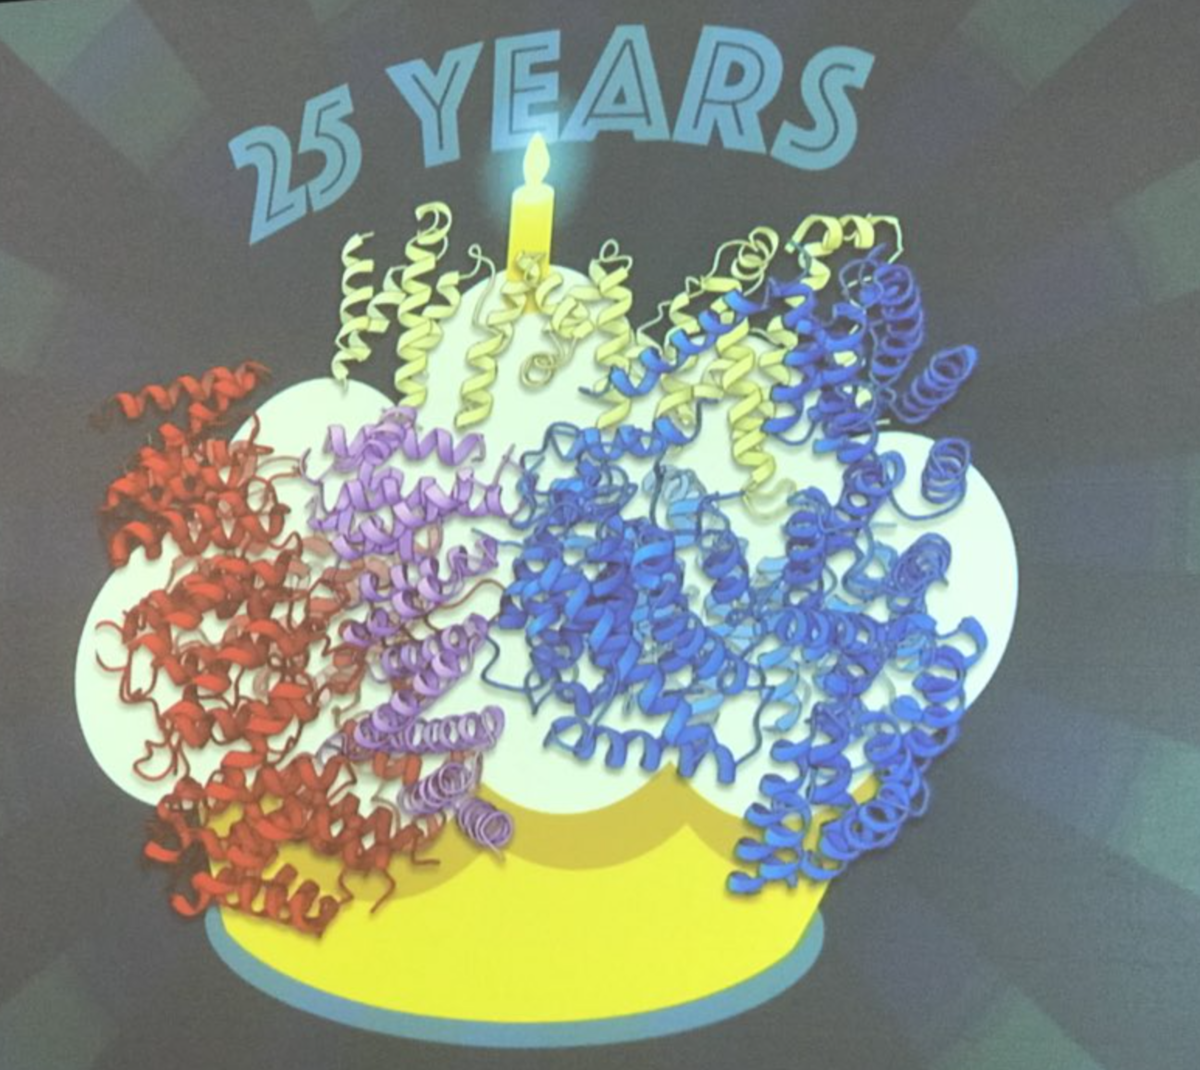 在2月份的治疗学会议上，Kochanek博士揭开了亨廷顿蛋白的结构（弯弯曲曲的丝带），把这作为一个生日礼物送给亨廷顿社区庆祝该基因发现以来25周年。  